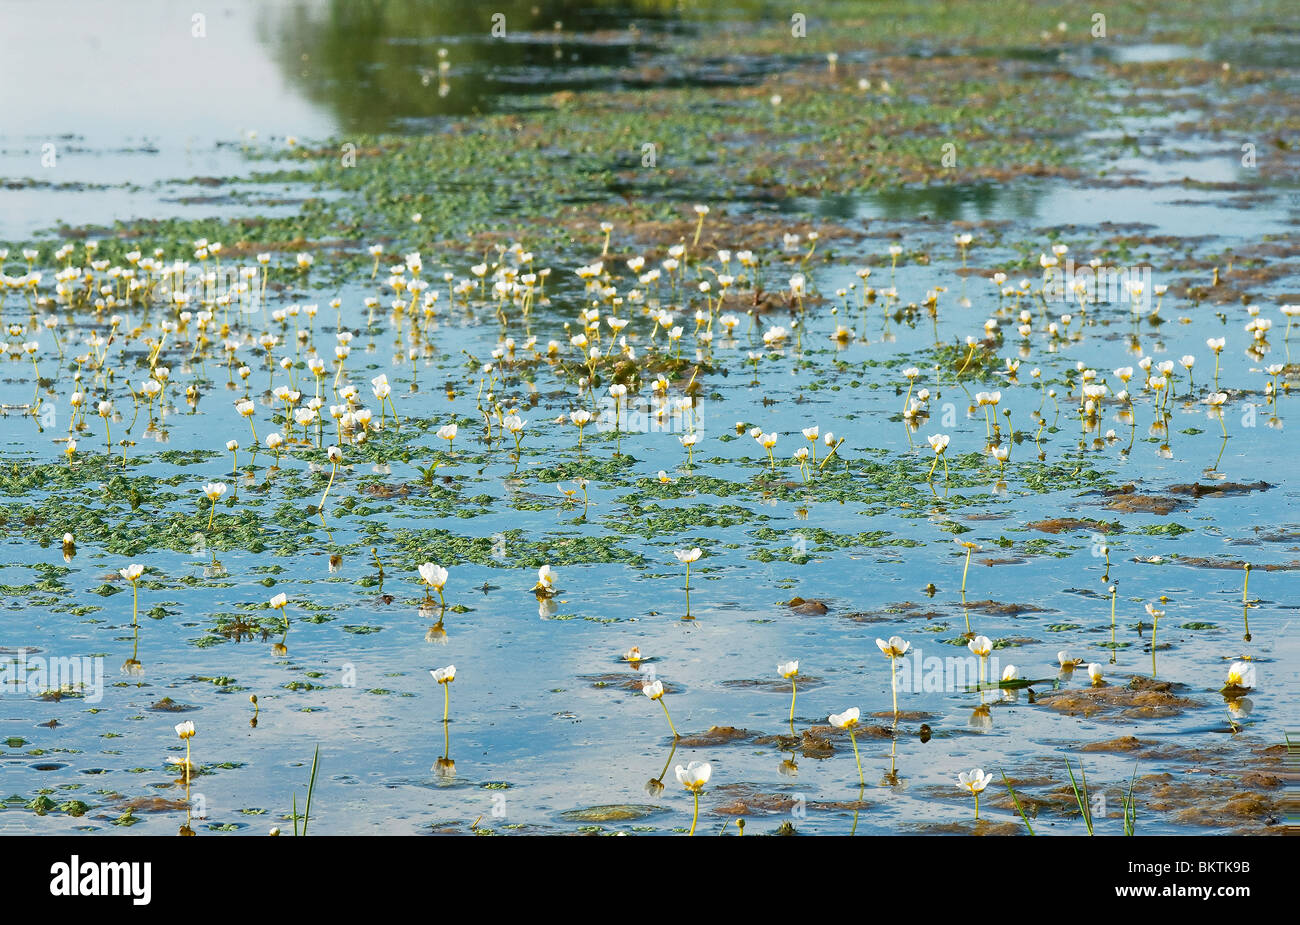 Fan-leaved Water-crowfoot in a pond Stock Photo